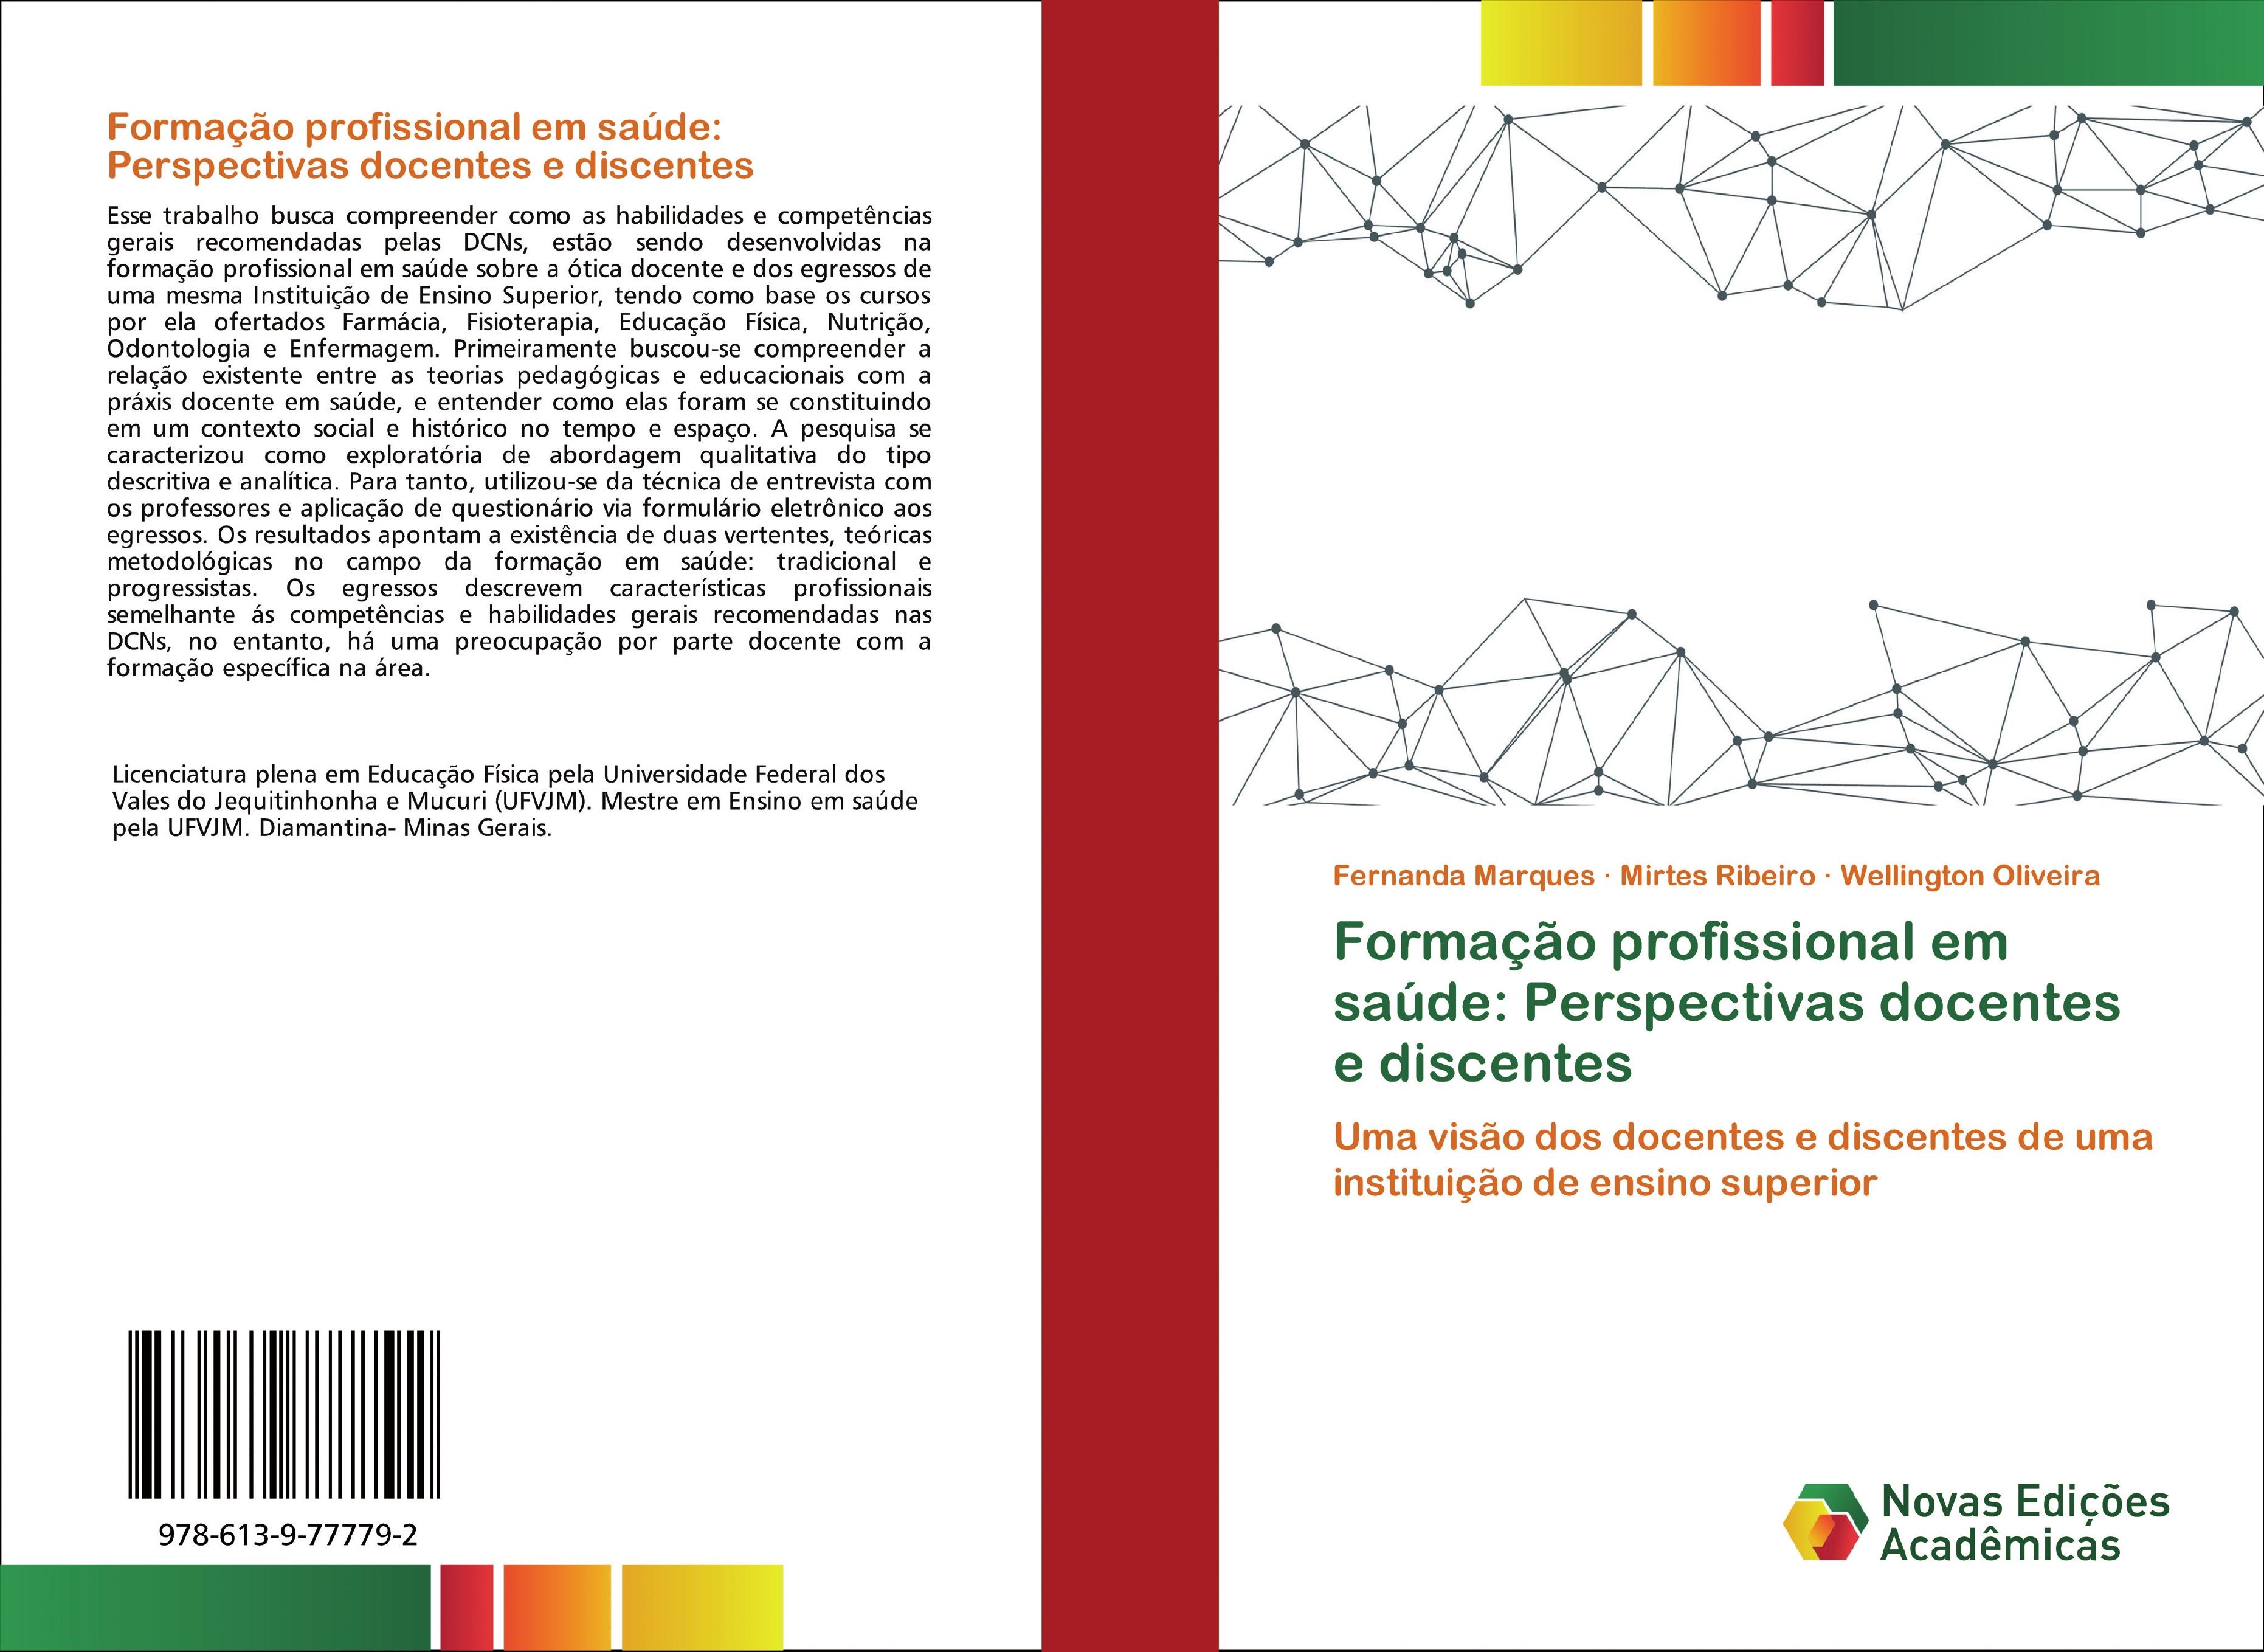 Formação profissional em saúde: Perspectivas docentes e discentes - Fernanda Marques Mirtes Ribeiro Wellington Oliveira